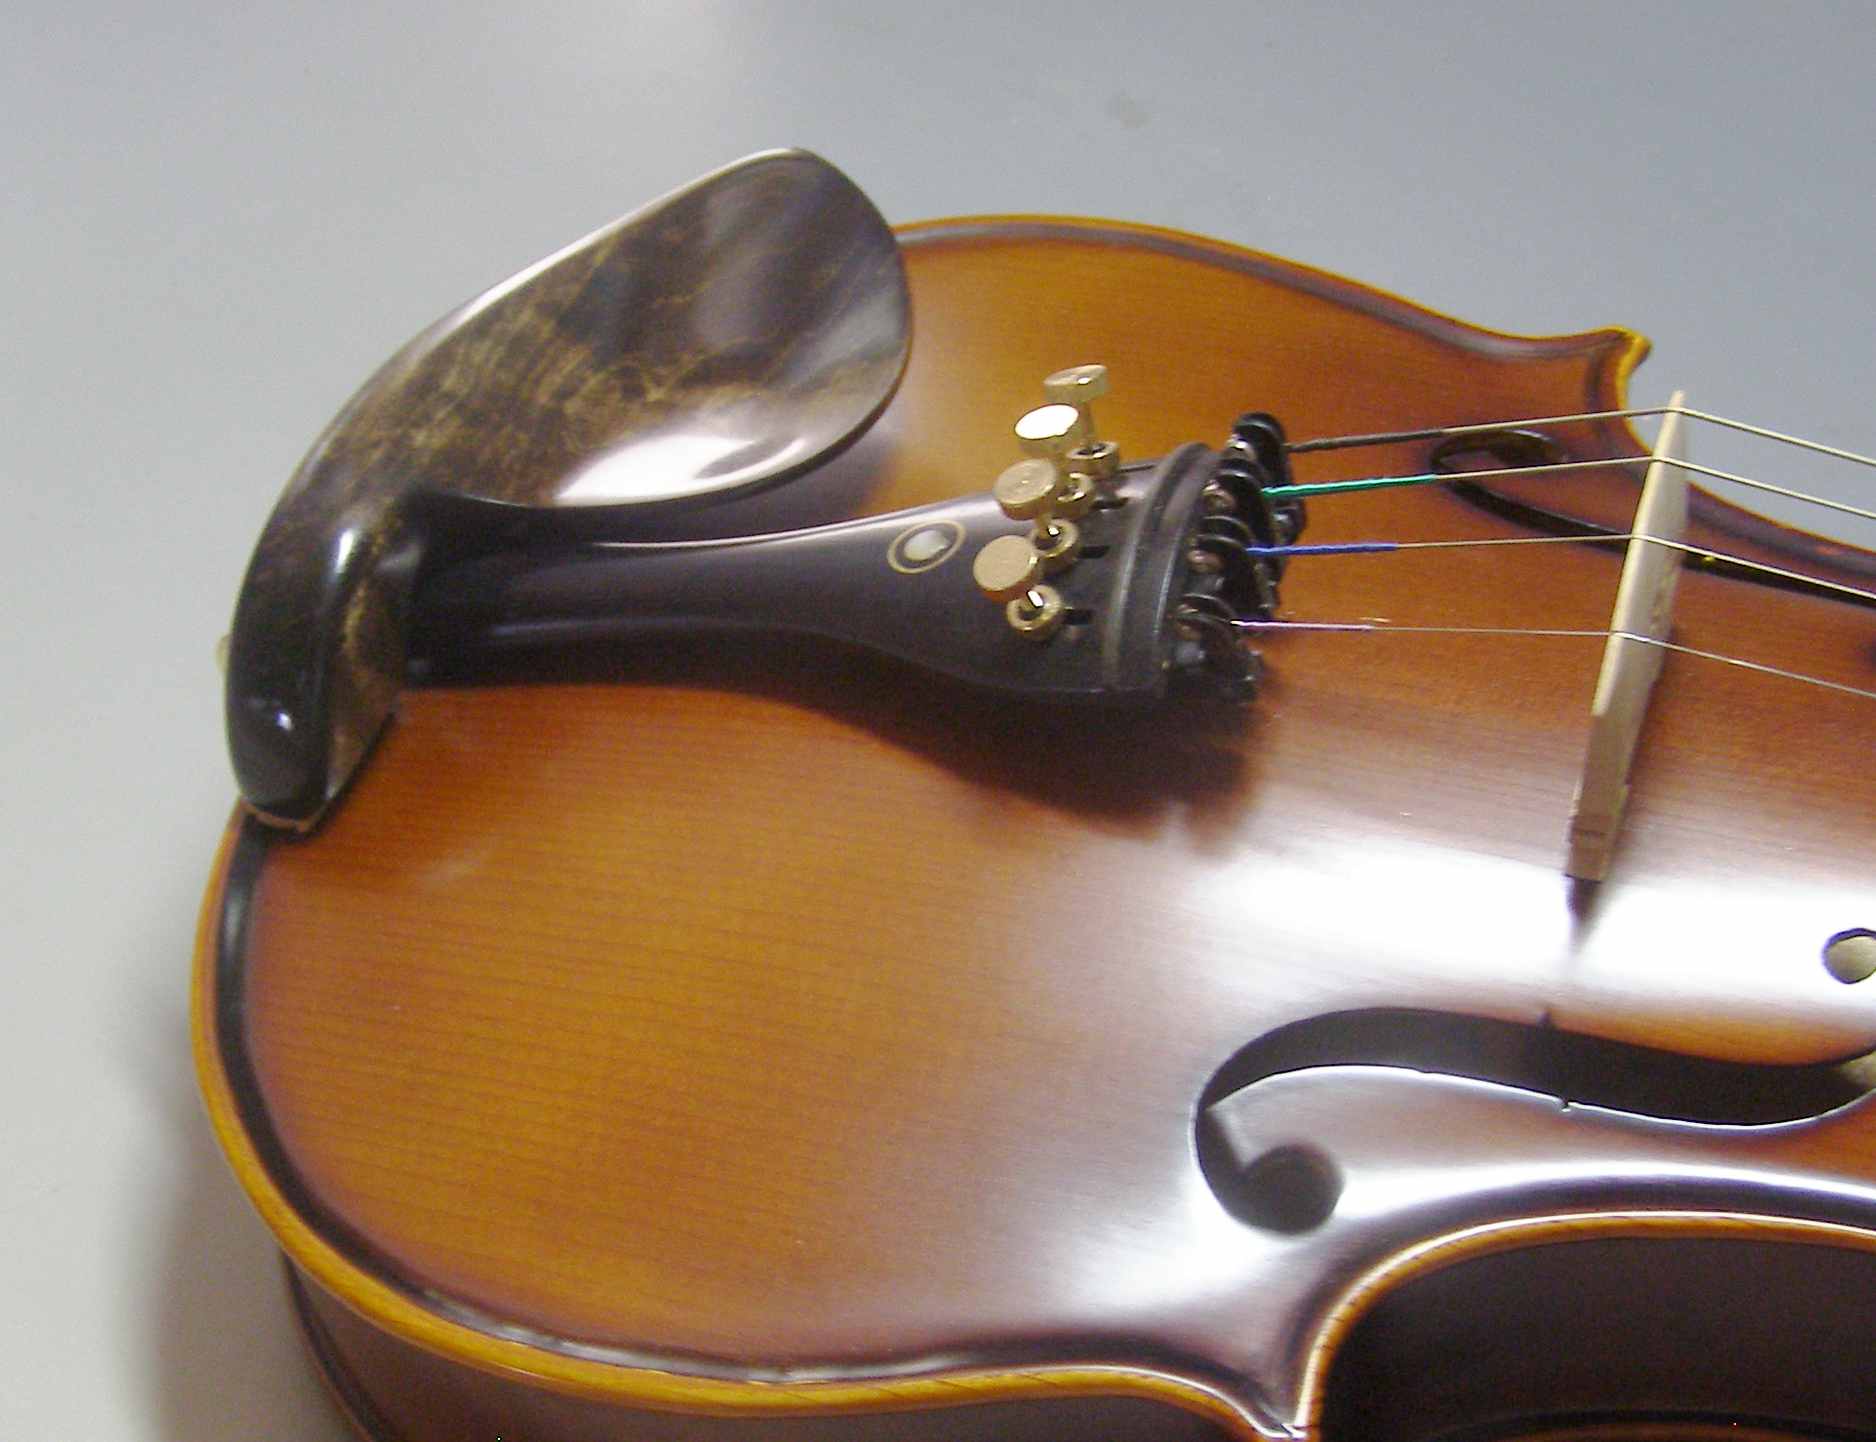 バイオリン顎当て かえでハードメイプル 縮み斑杢 スドラド型-